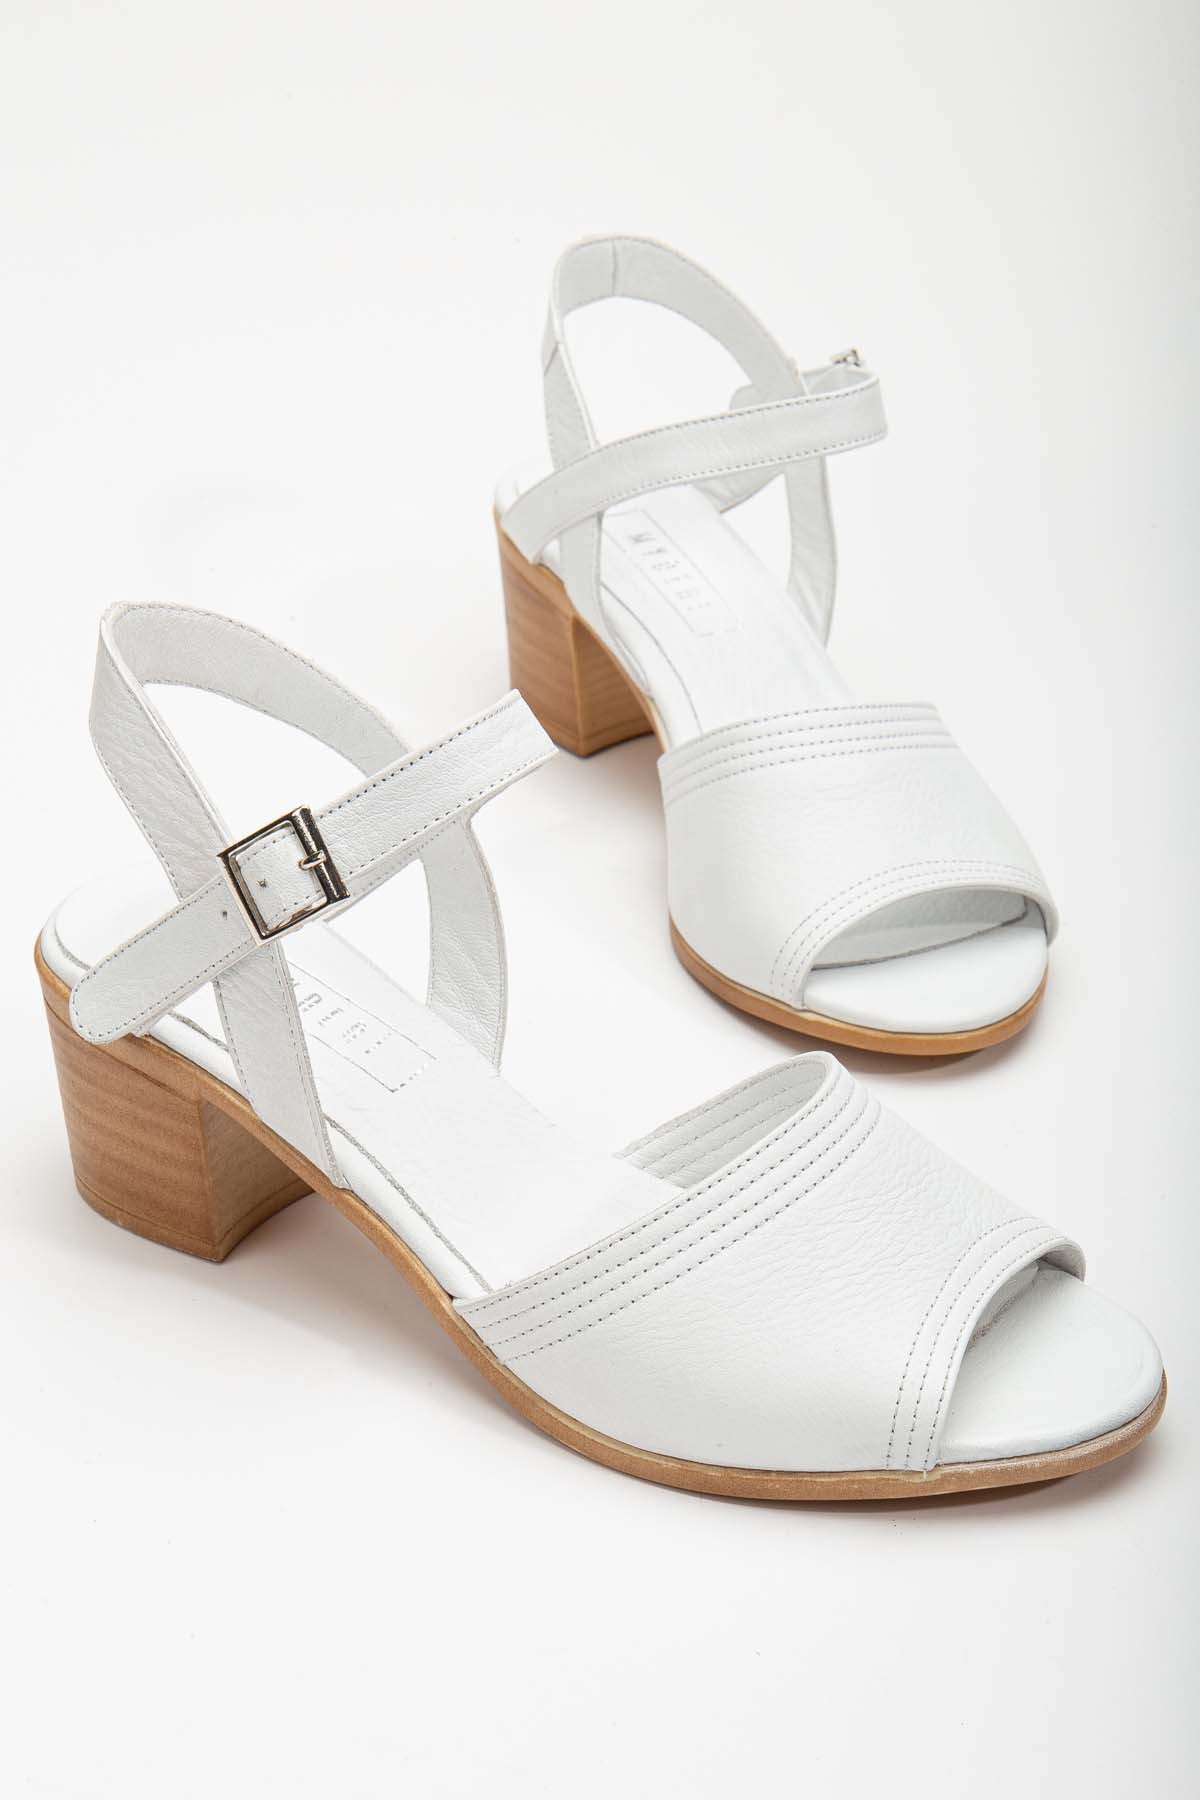 Jolıe Hakiki Deri Tek Bantlı Kadın Topuklu Ayakkabı (B2186 ) - Beyaz